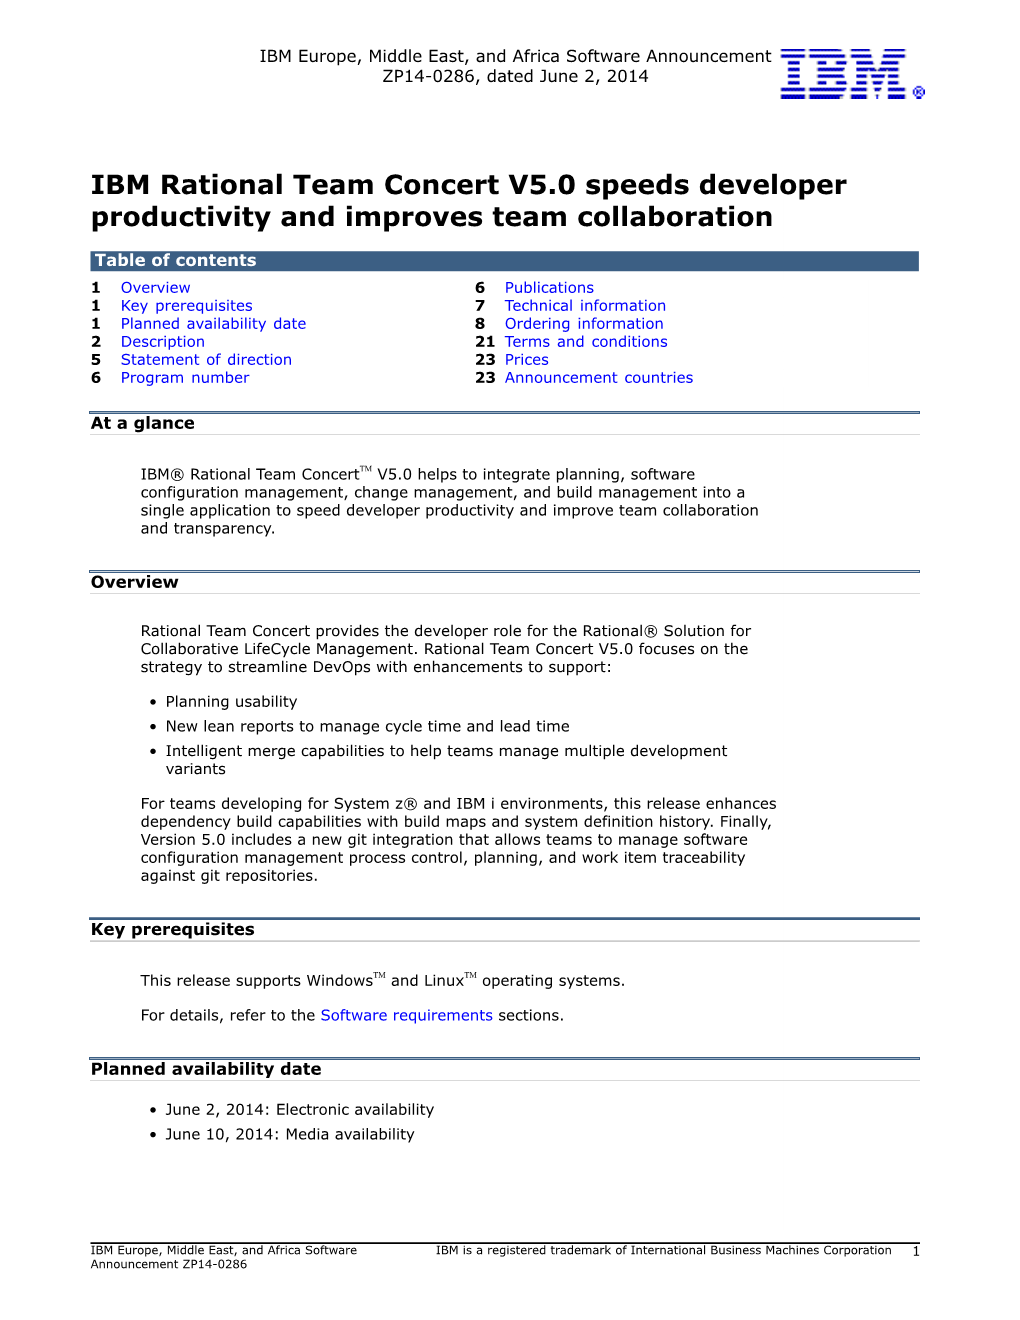 IBM Rational Team Concert V5.0 Speeds Developer Productivity and Improves Team Collaboration